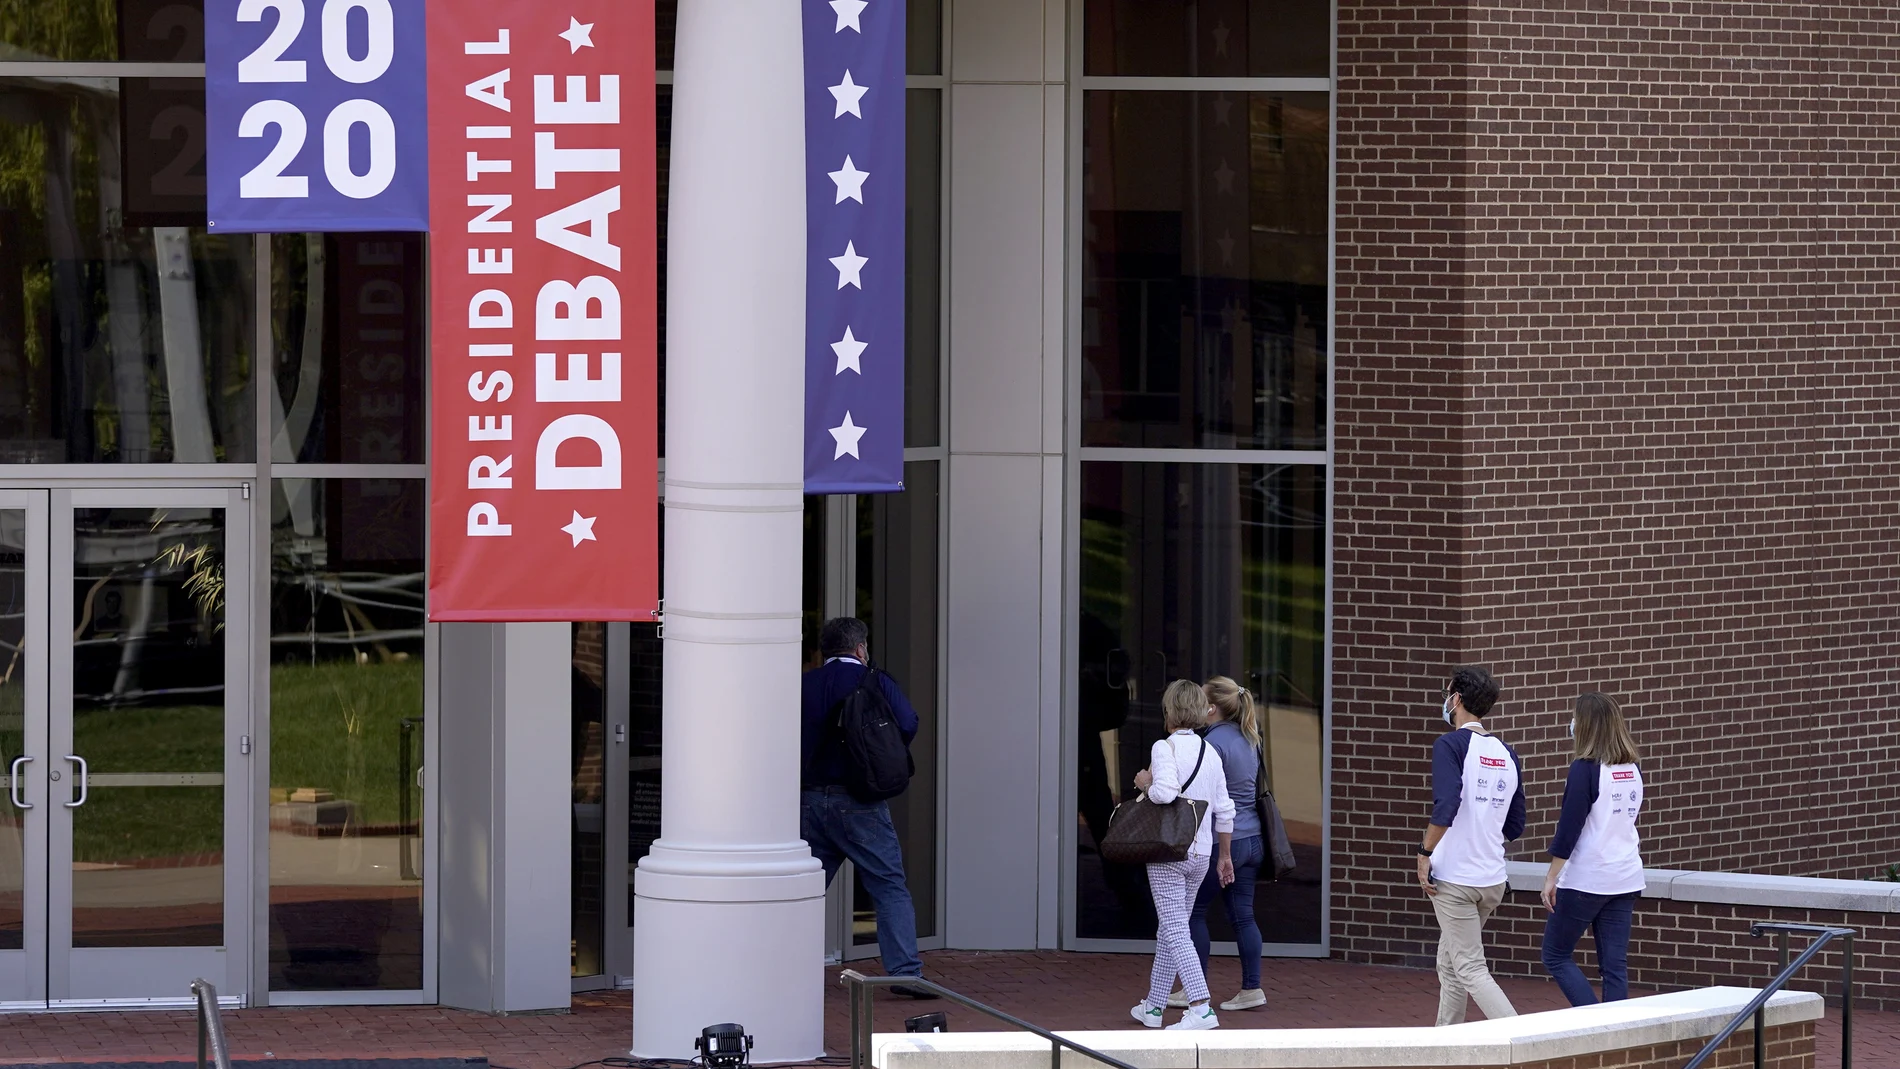 La Universidad de Belmont albergará el debate presidencial